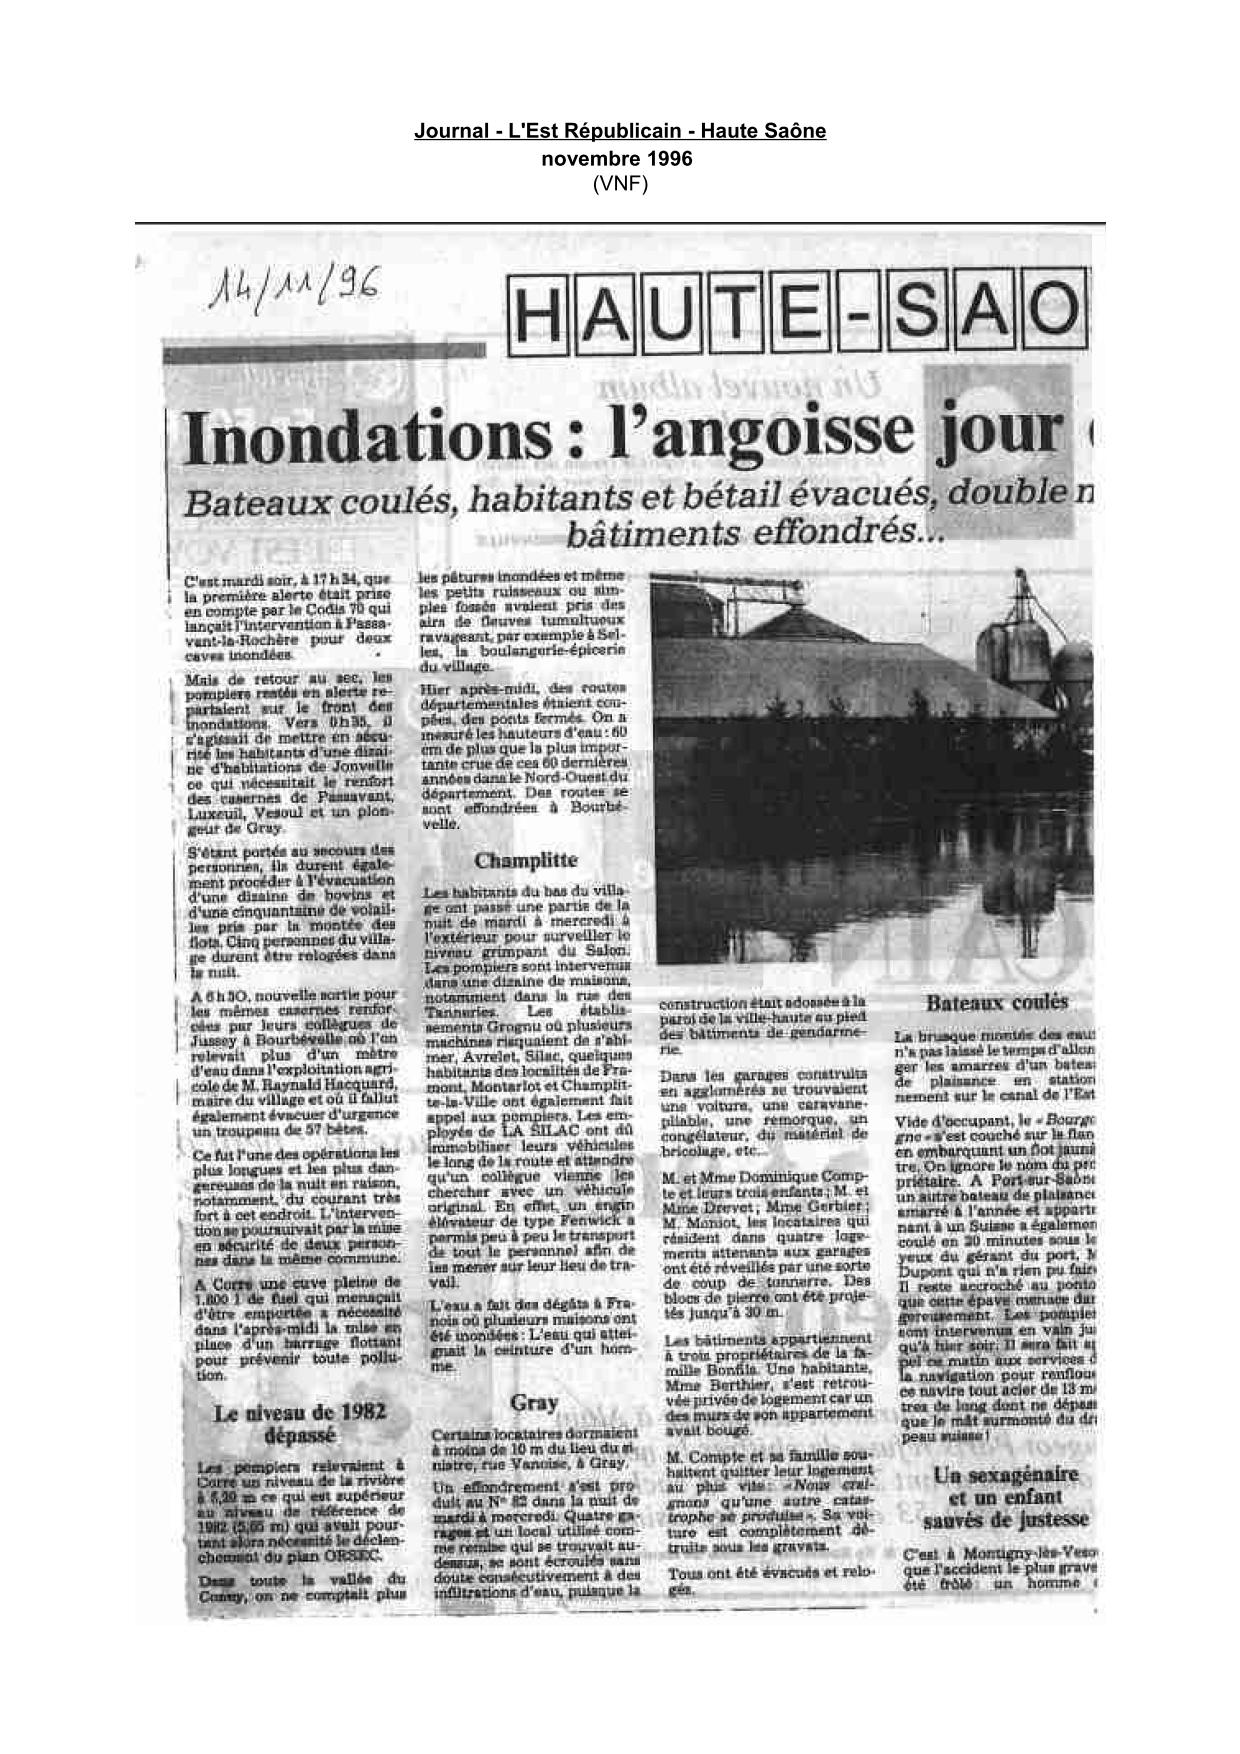 Journal - L'Est Républicain - 1996 - Haute Saône